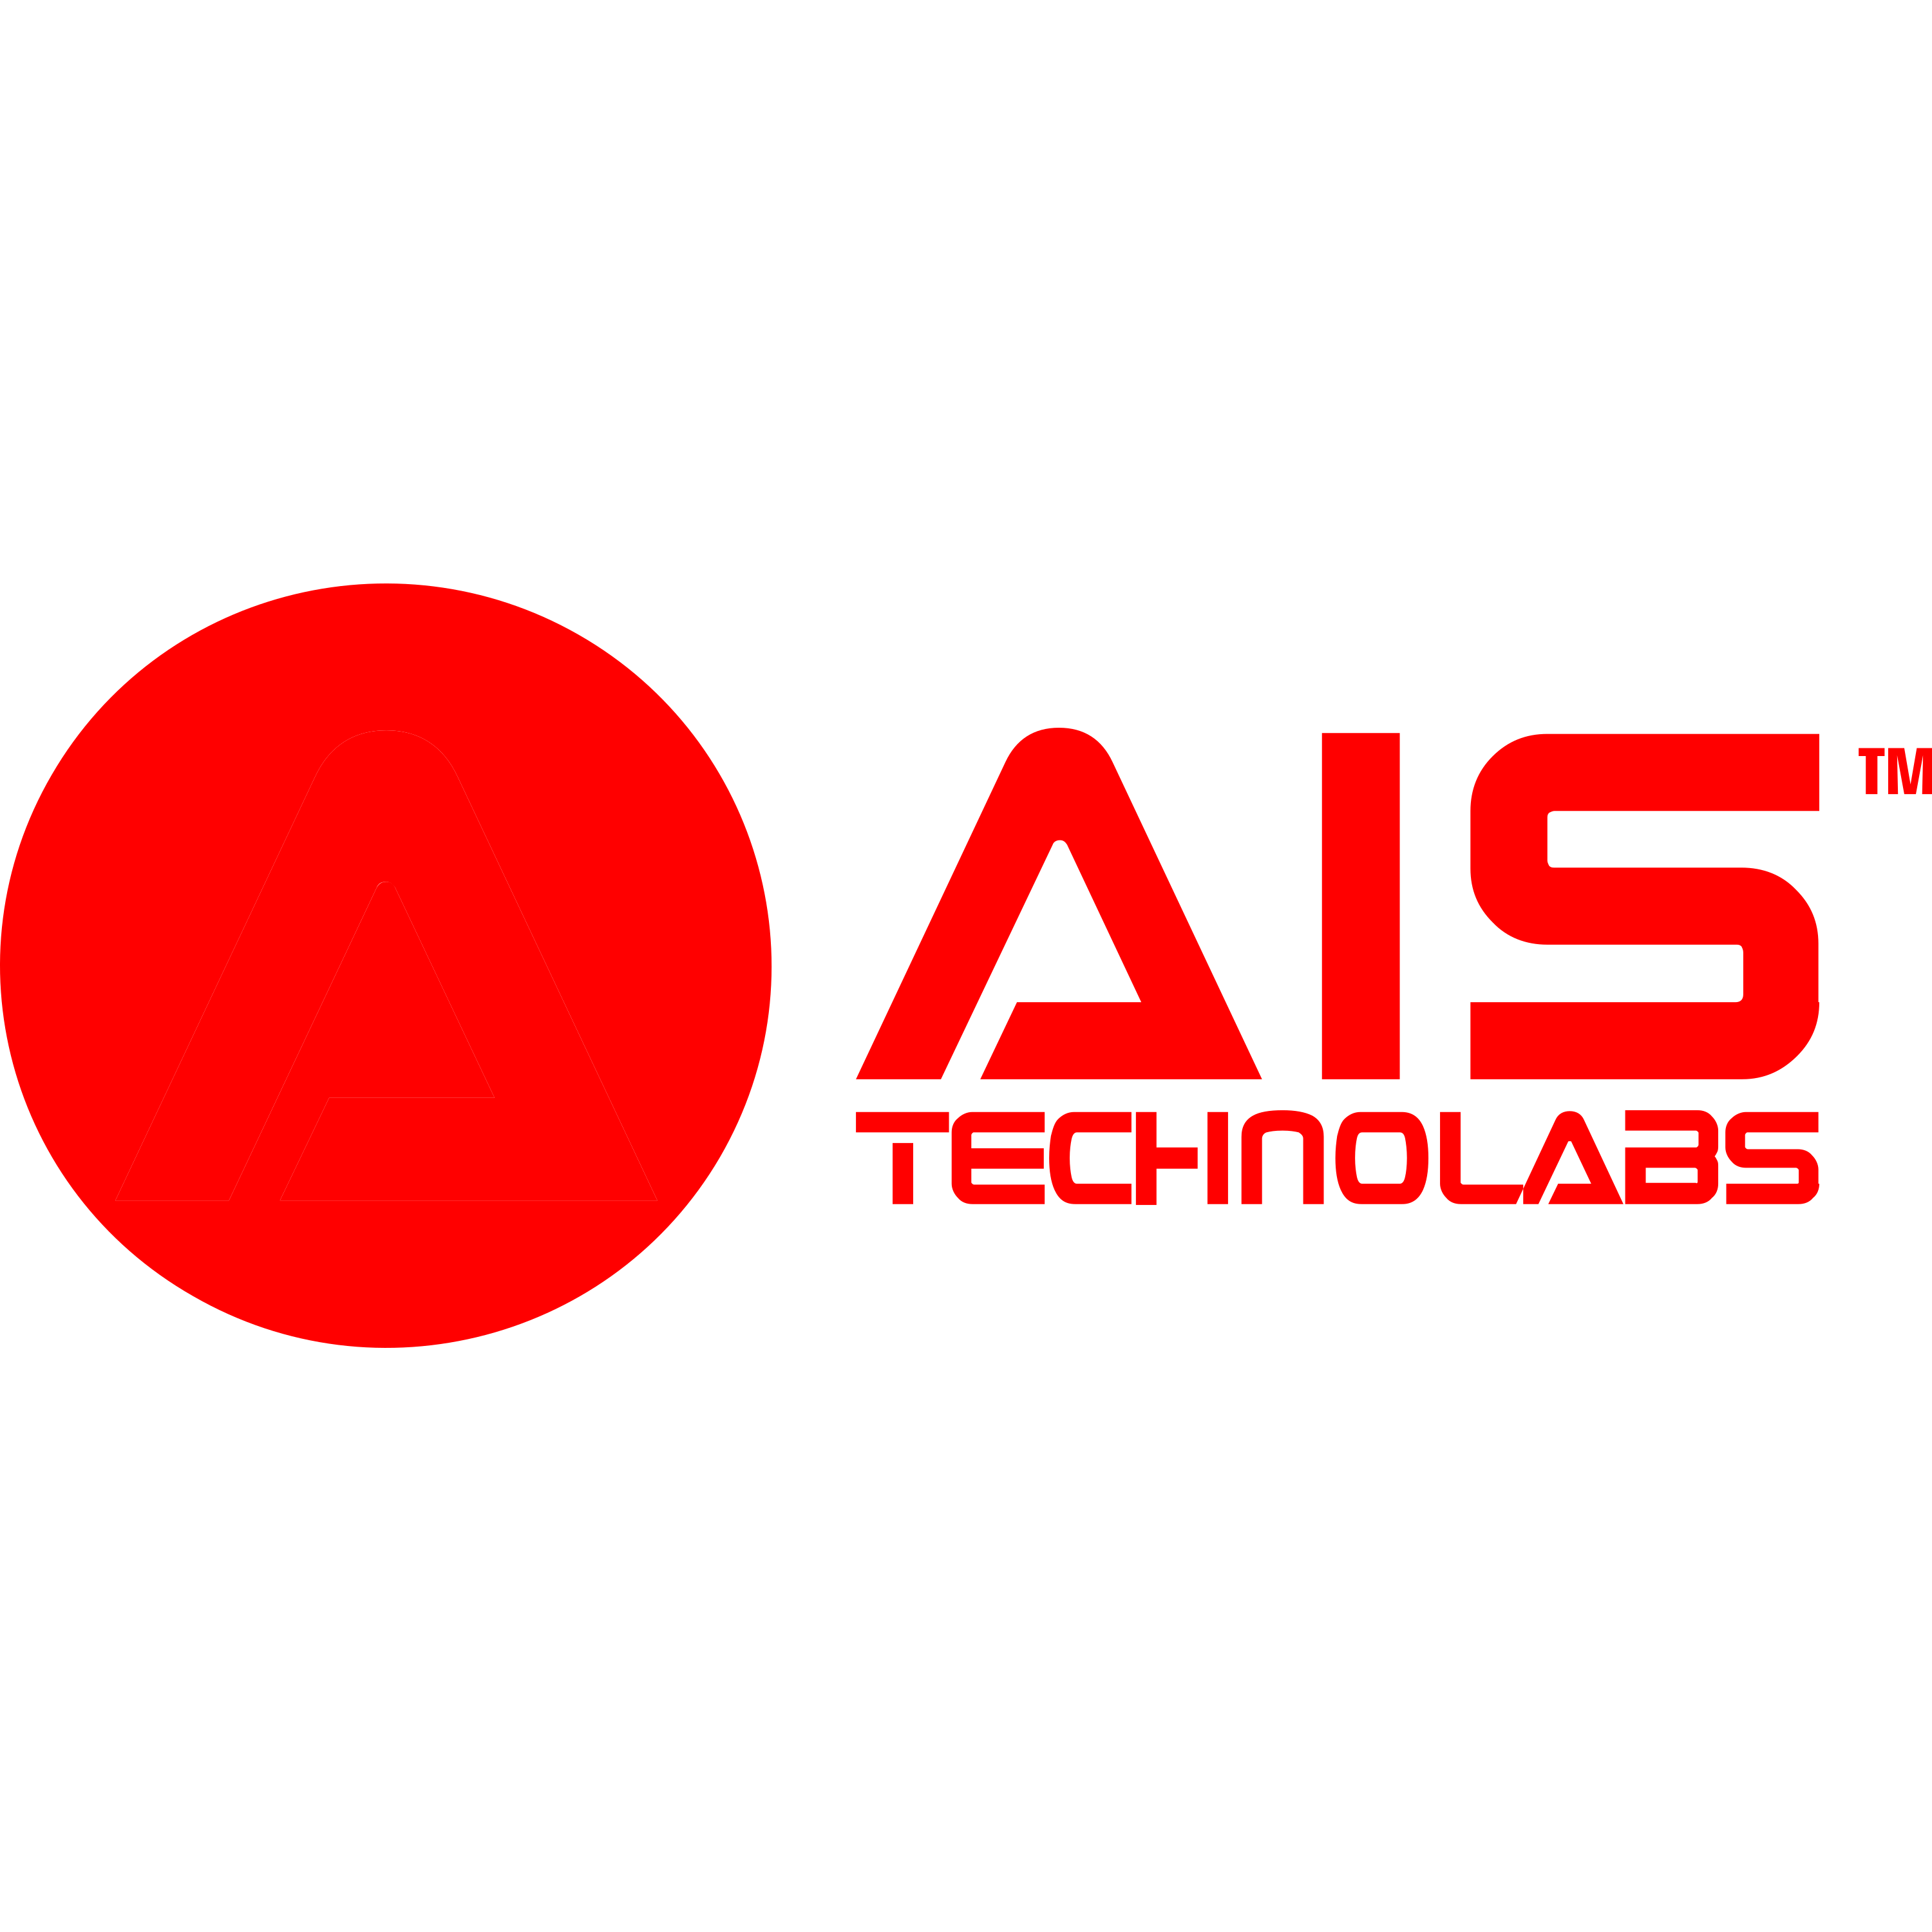 Ais Technolabs Logo  Transparent Photo